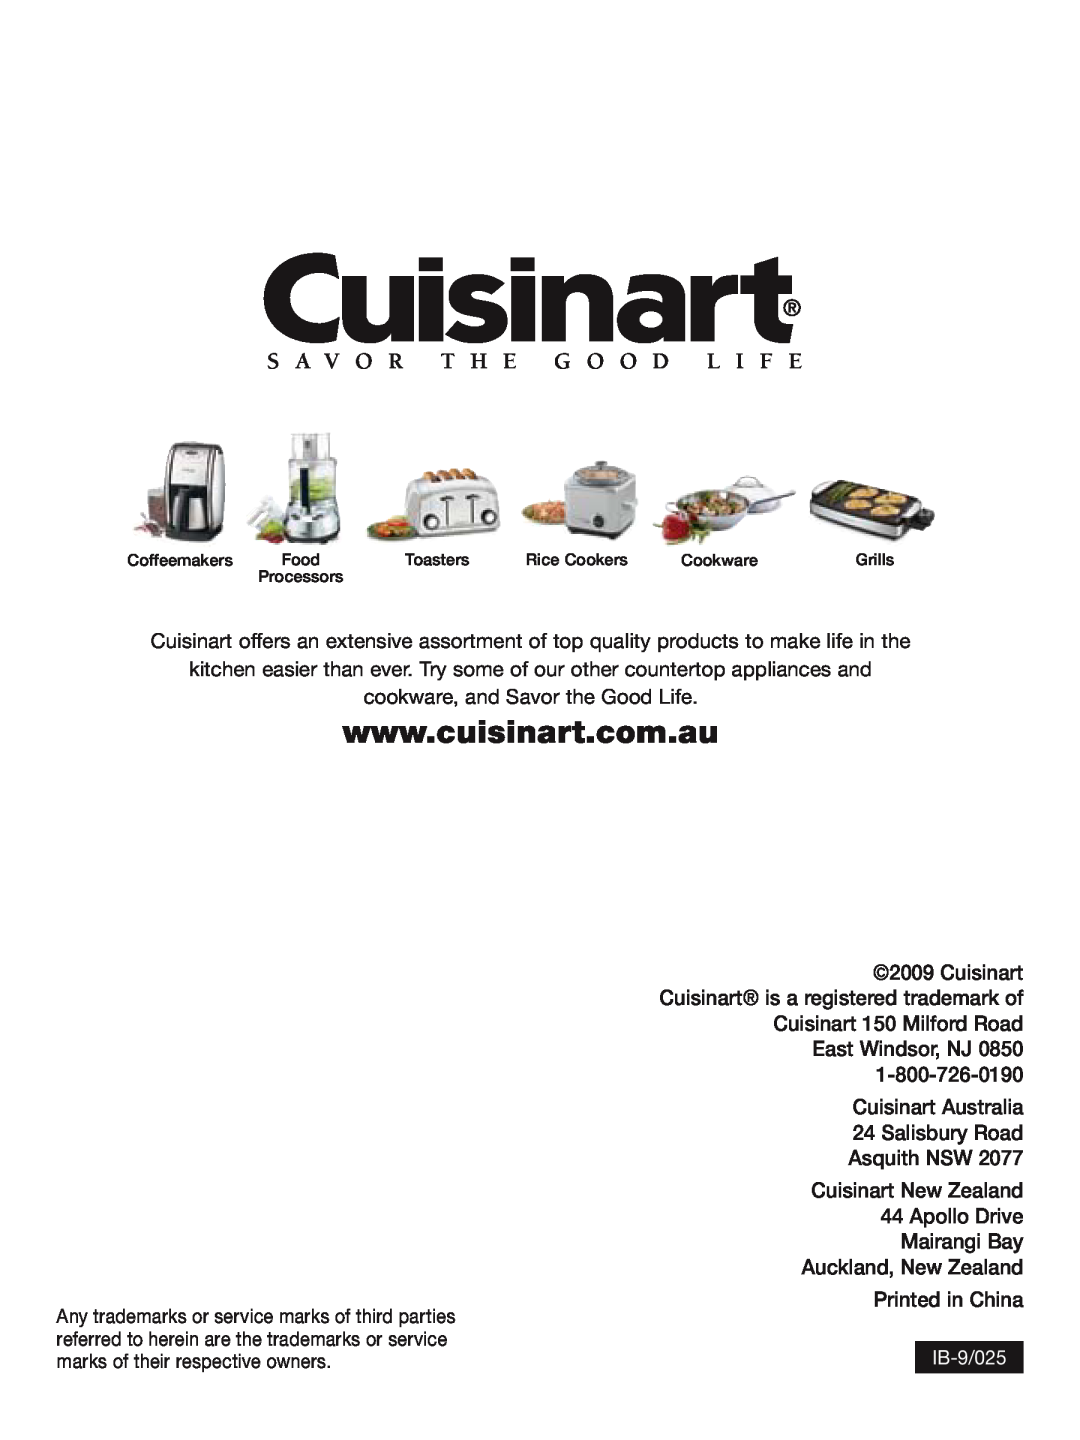 Cuisinart FP-2207A manual S A V O R T H E G O O D L I F E, IB-9/025 